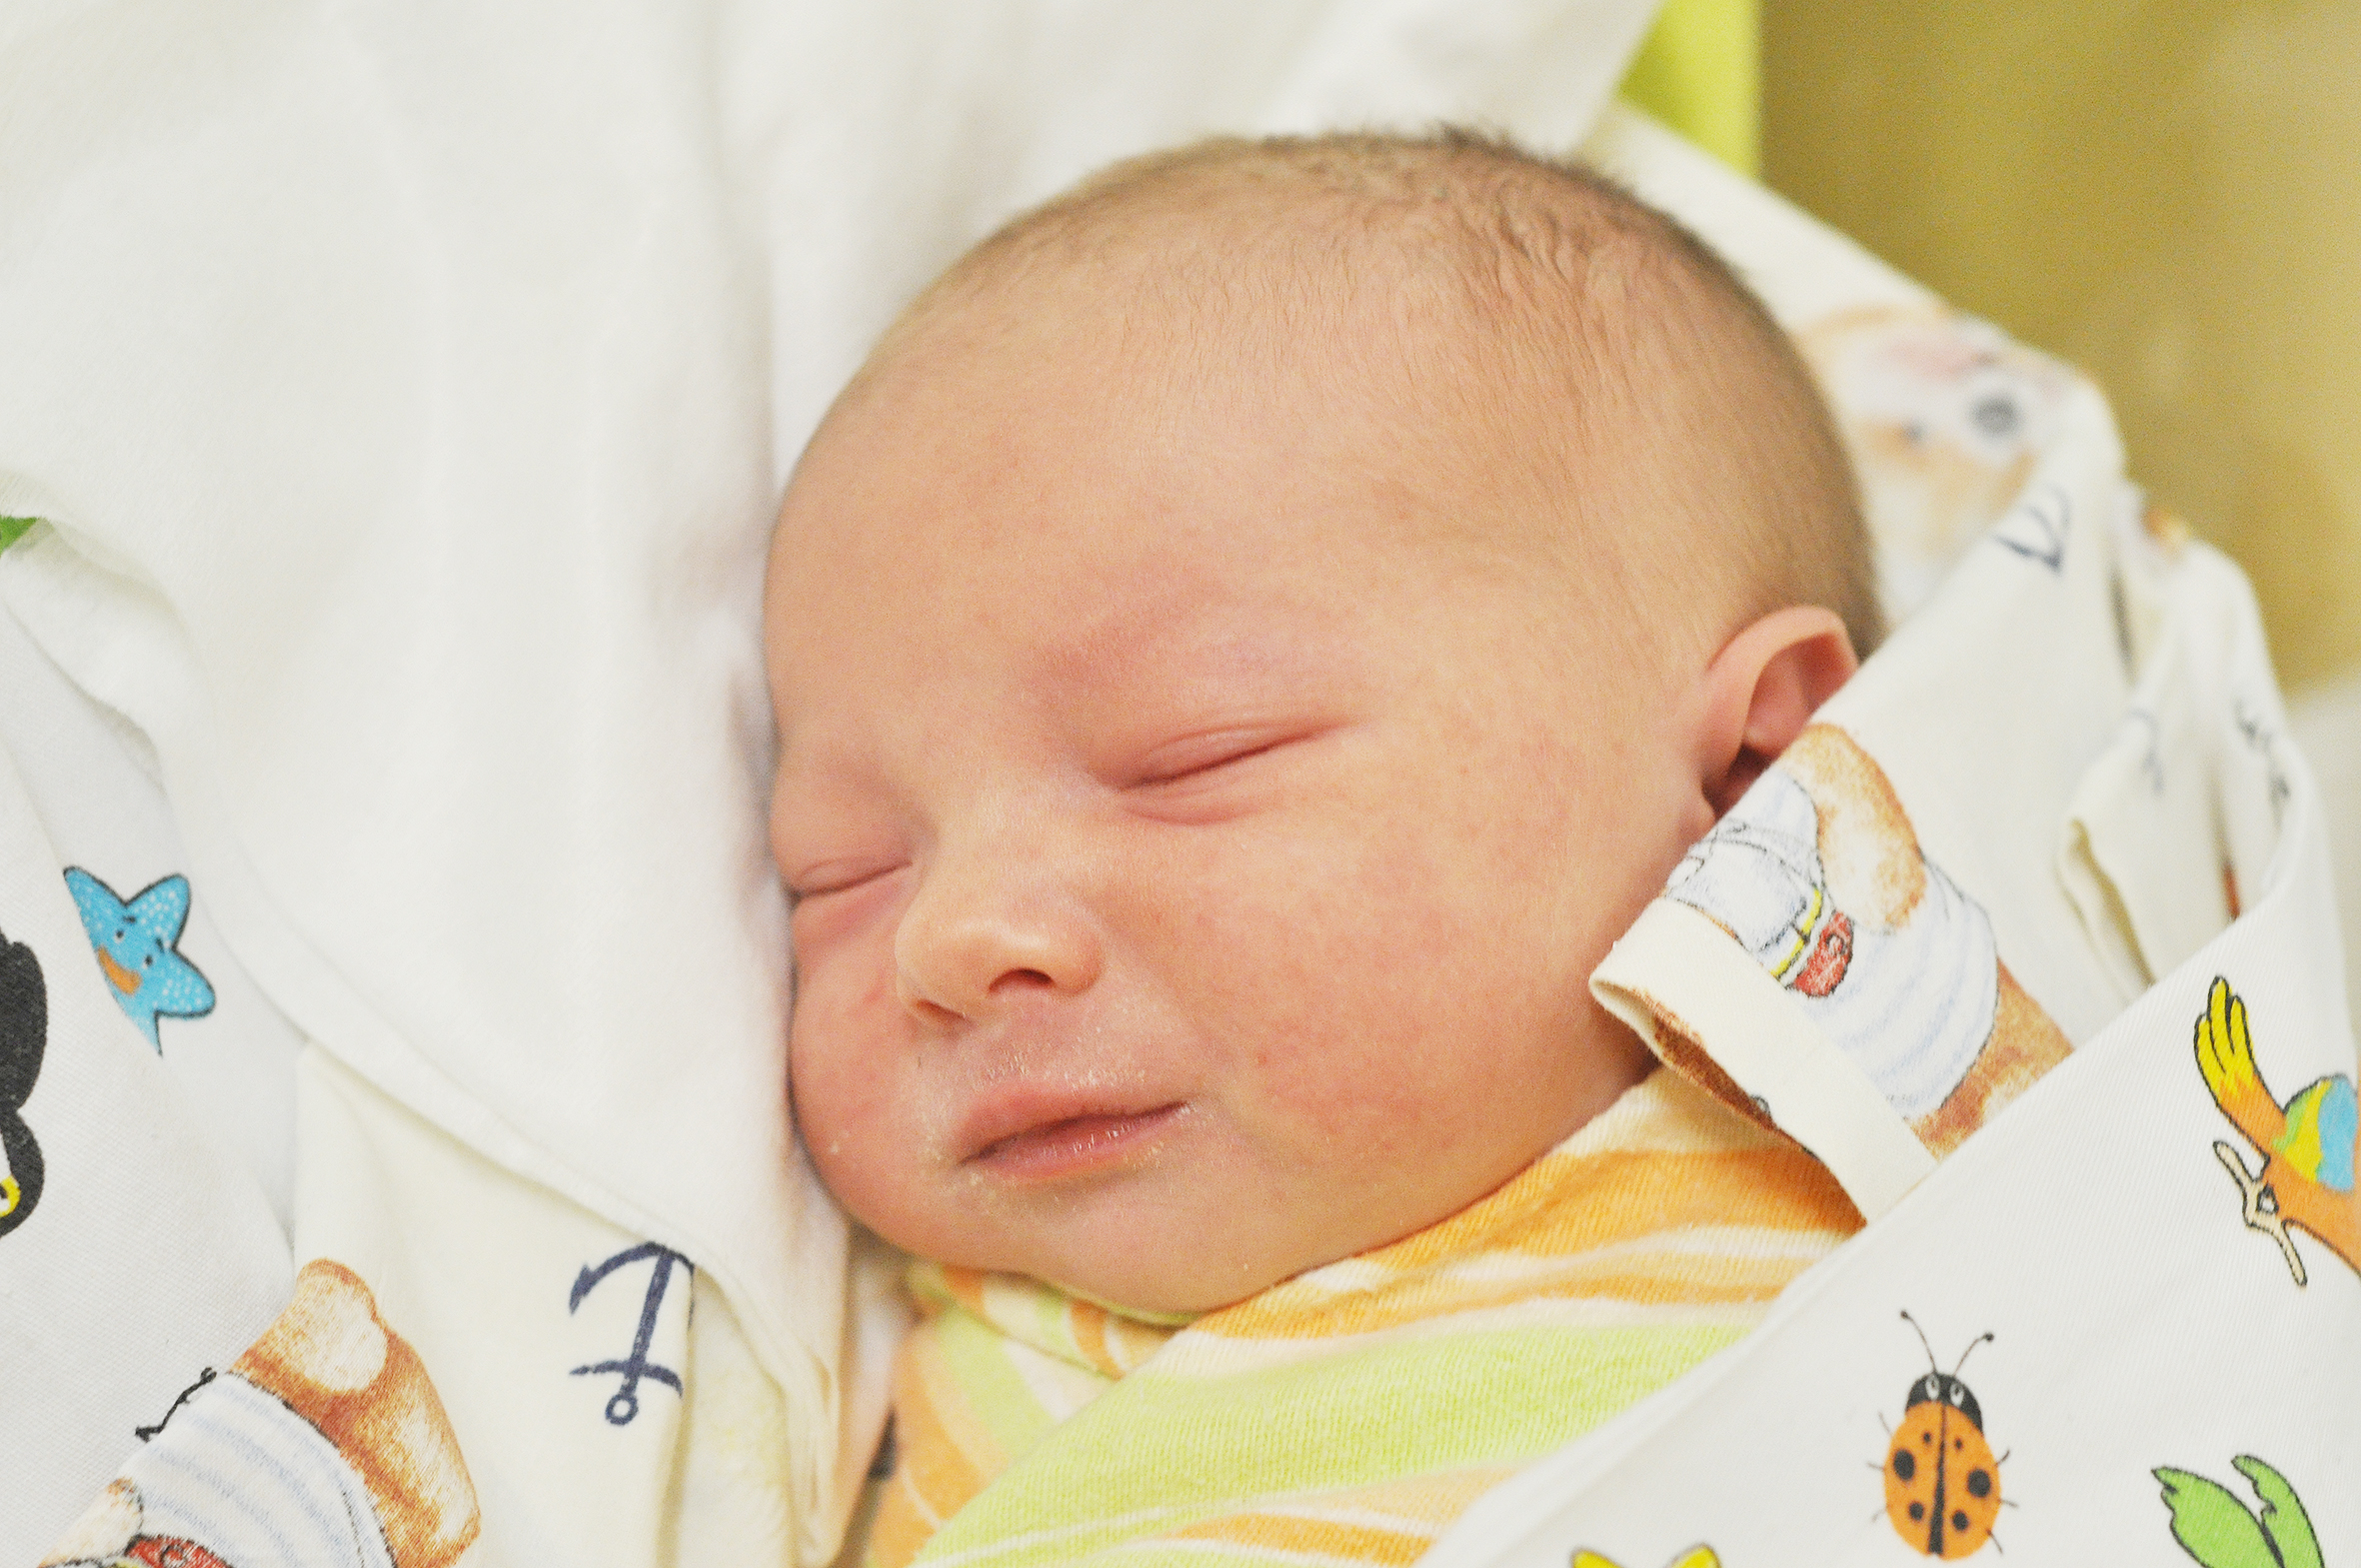 Tadeusz jest synkiem Emilii i Marcina z Krzanowic. Urodził się 15 listopada o 13.56. Przy wadze 3330 g mierzył 54 cm.